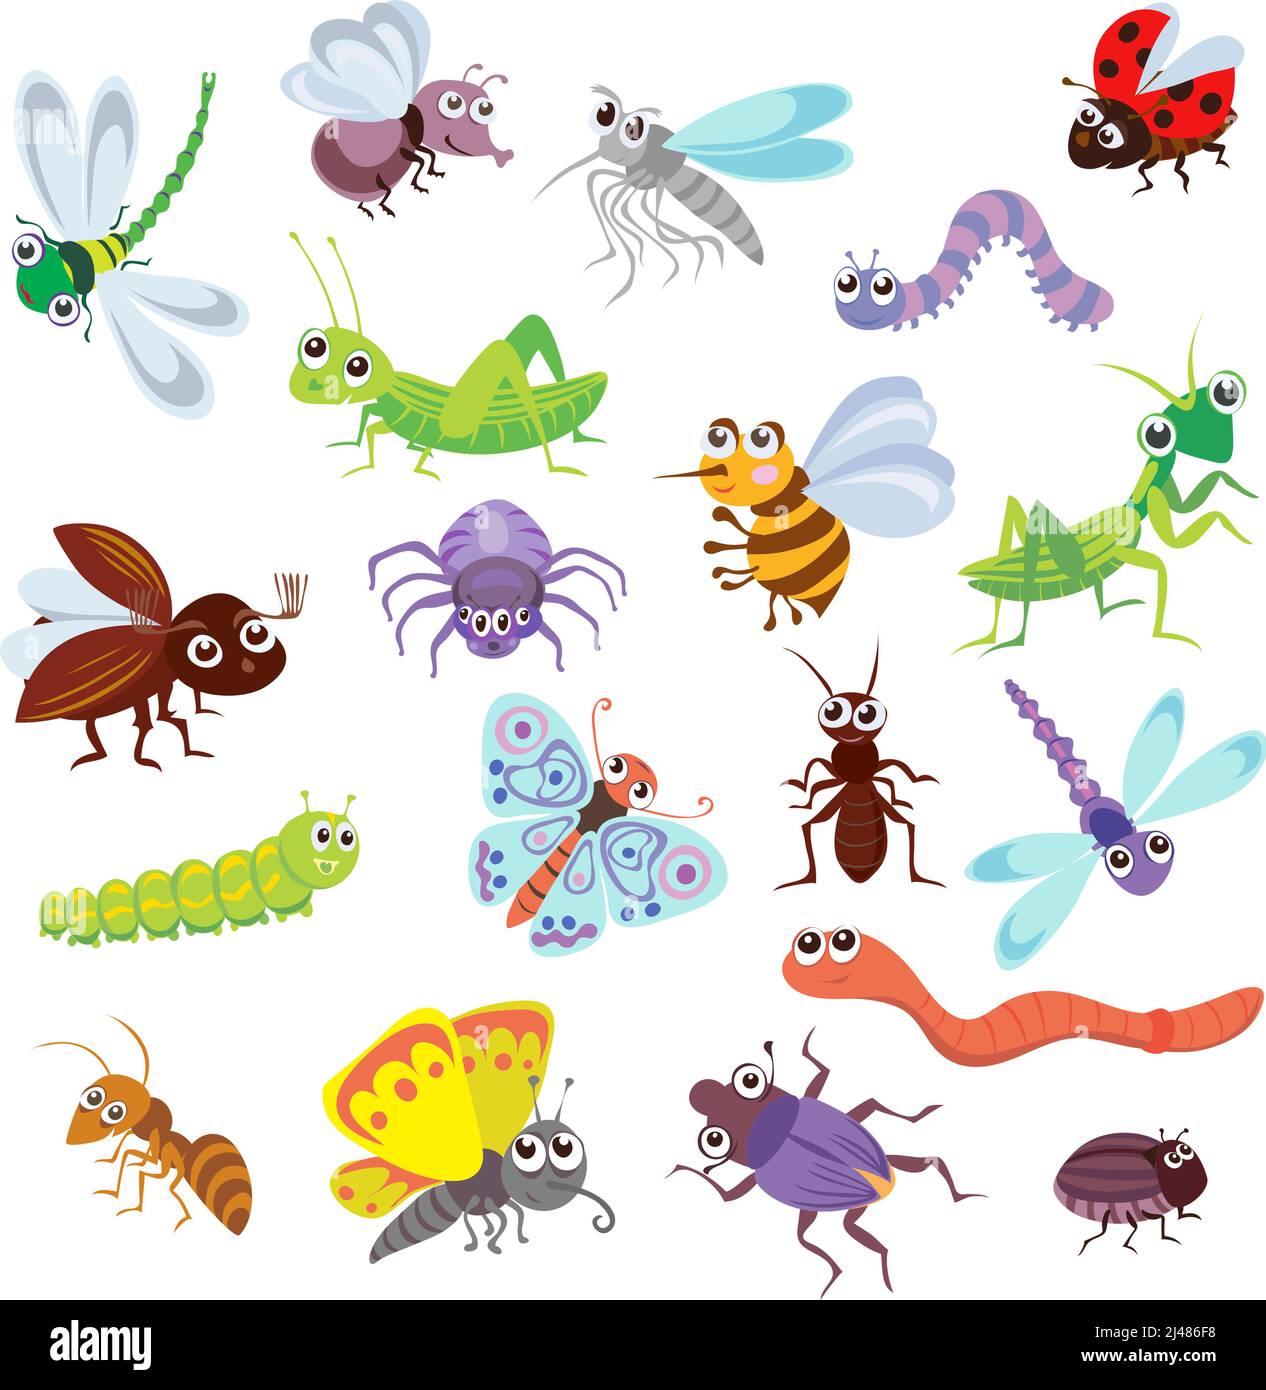 insectes amusants et autres insectes, motif, insectes, diverses postures et situations, dessin, vecteur, images, dessin animé Illustration de Vecteur